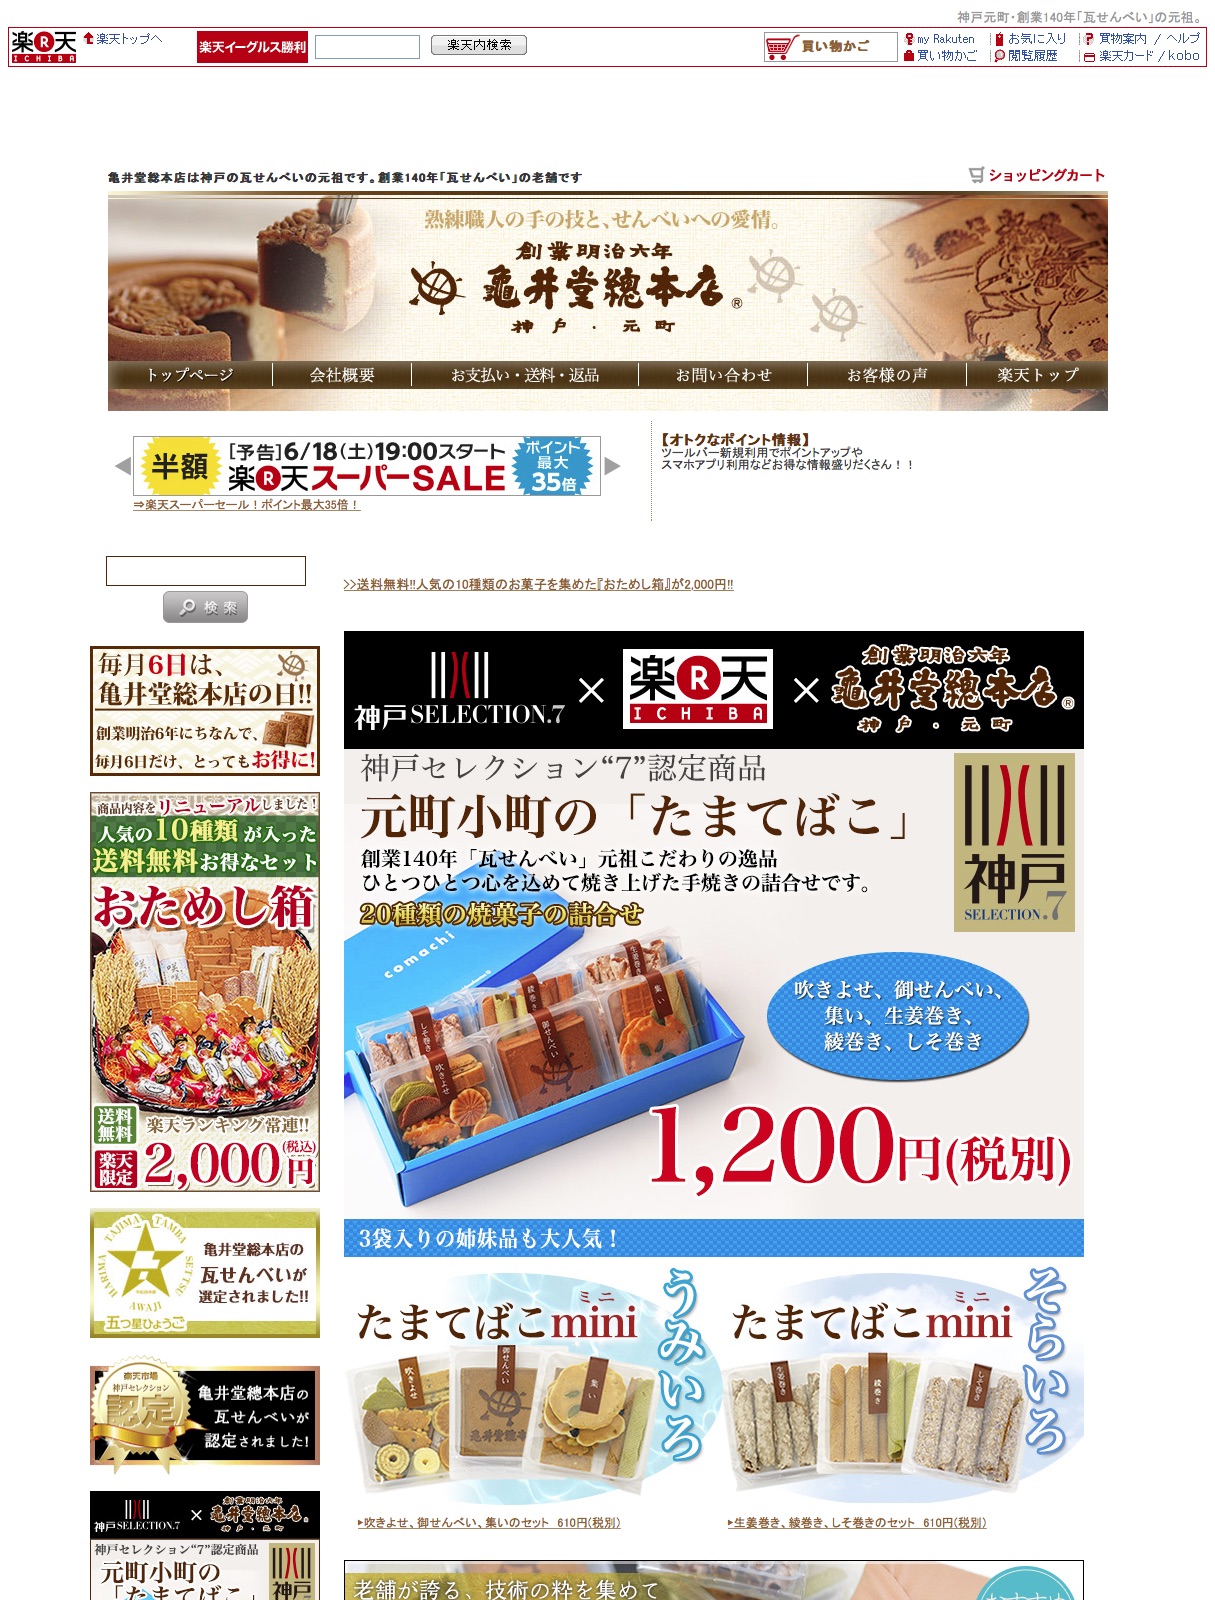 明治6年創業の亀井堂総本家は、神戸銘菓の瓦せんべい・瓦まんじゅうの元祖です。お歳暮やお中元などのギフトに通販ショップをご利用ください。